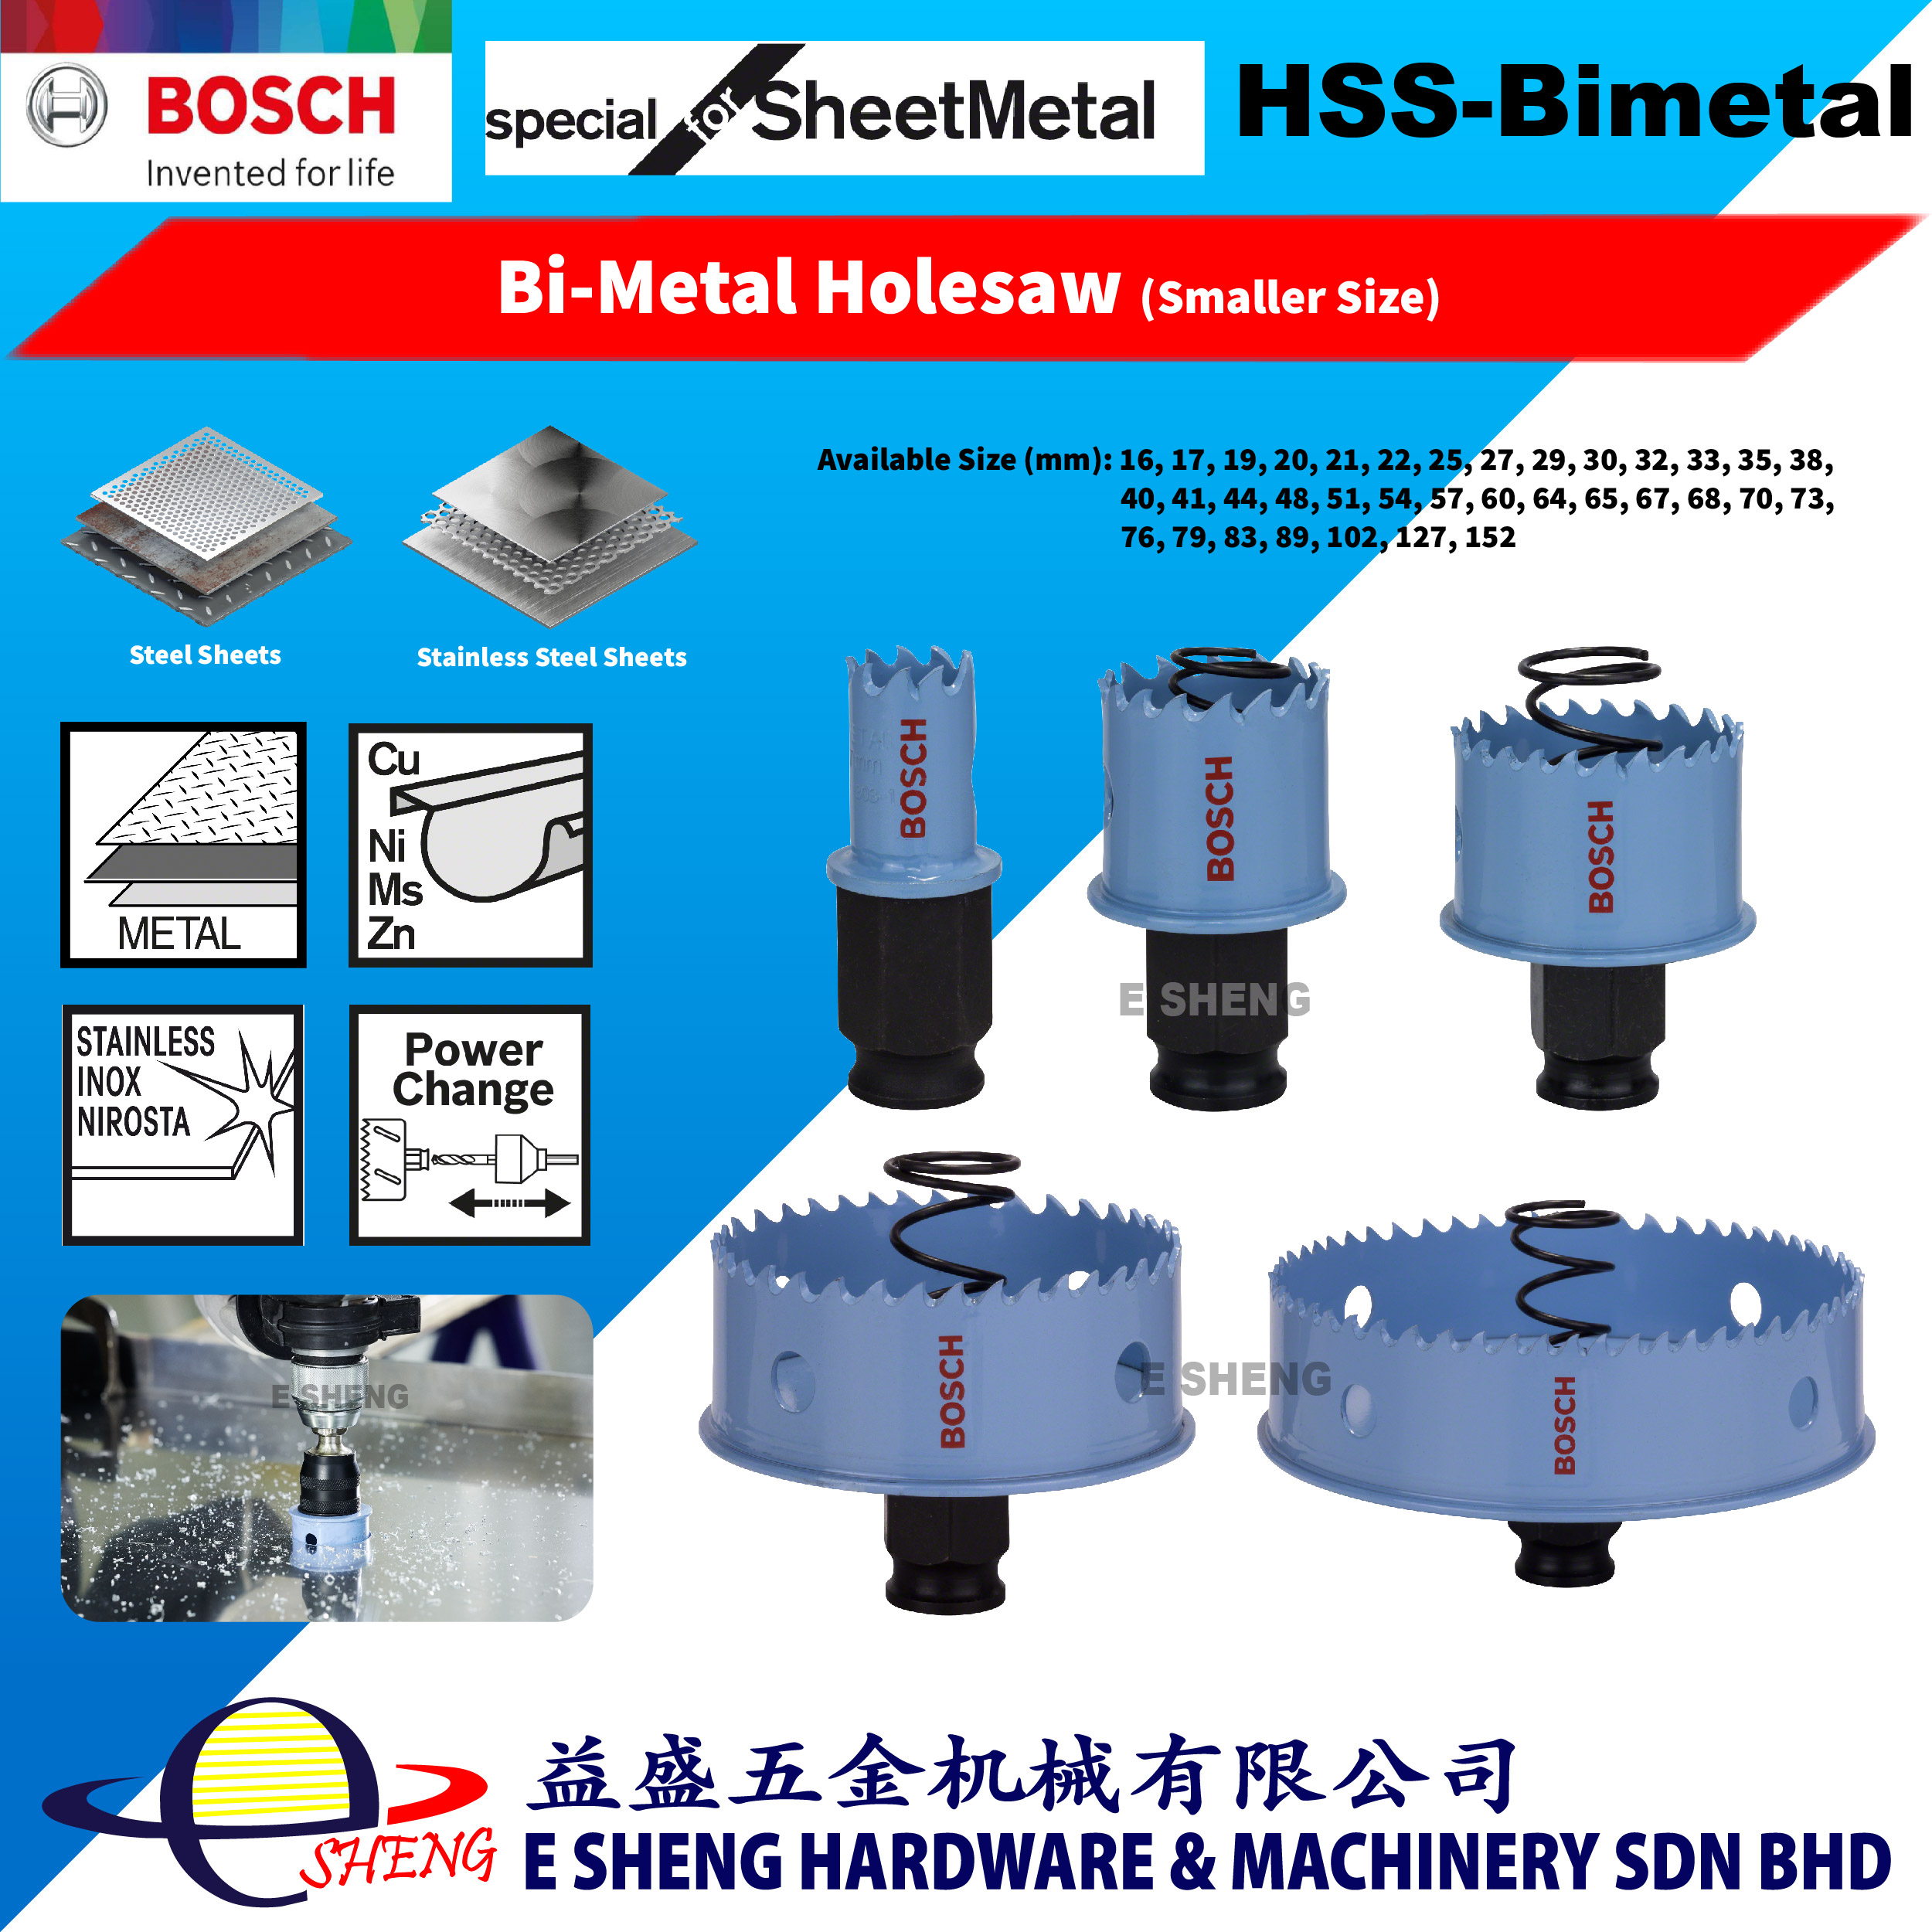 ボッシュ BOSCH (Bosch) bimetal hole saw (hexagonal axis shank